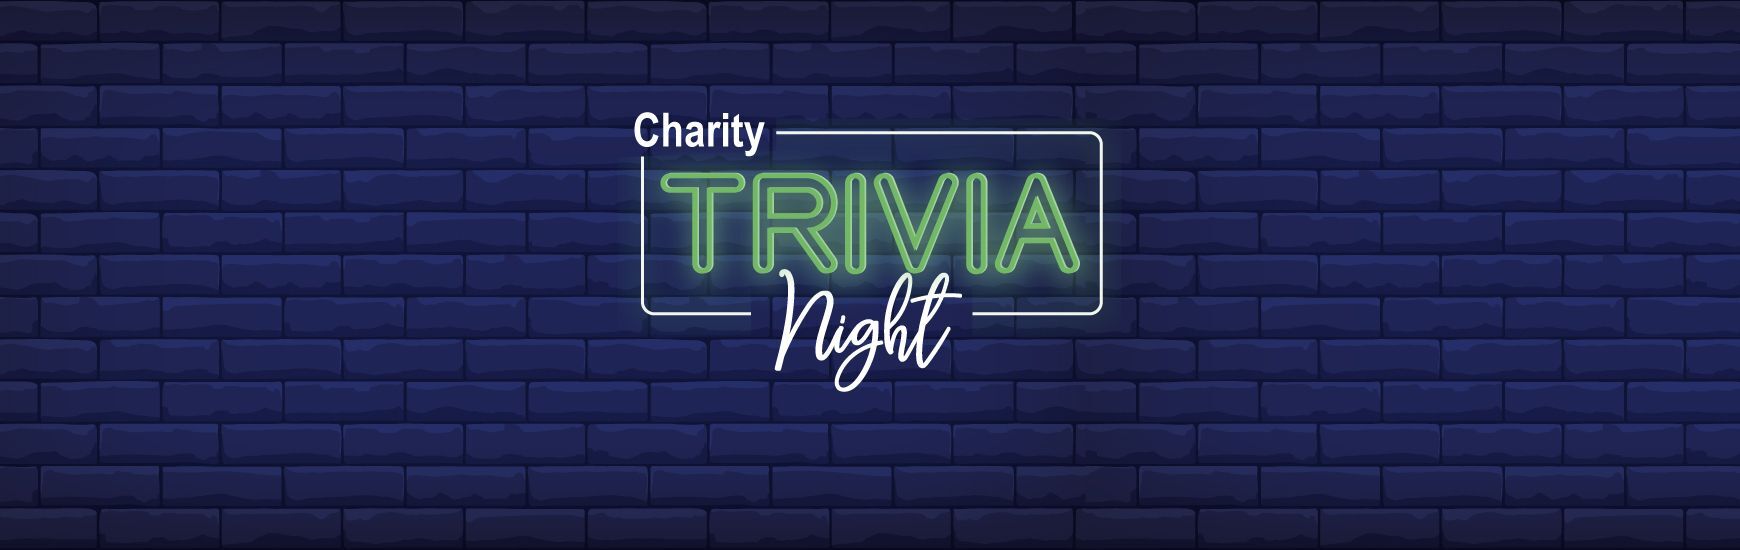 Join NGI's Charity Trivia Night on Thursday, Feb 2